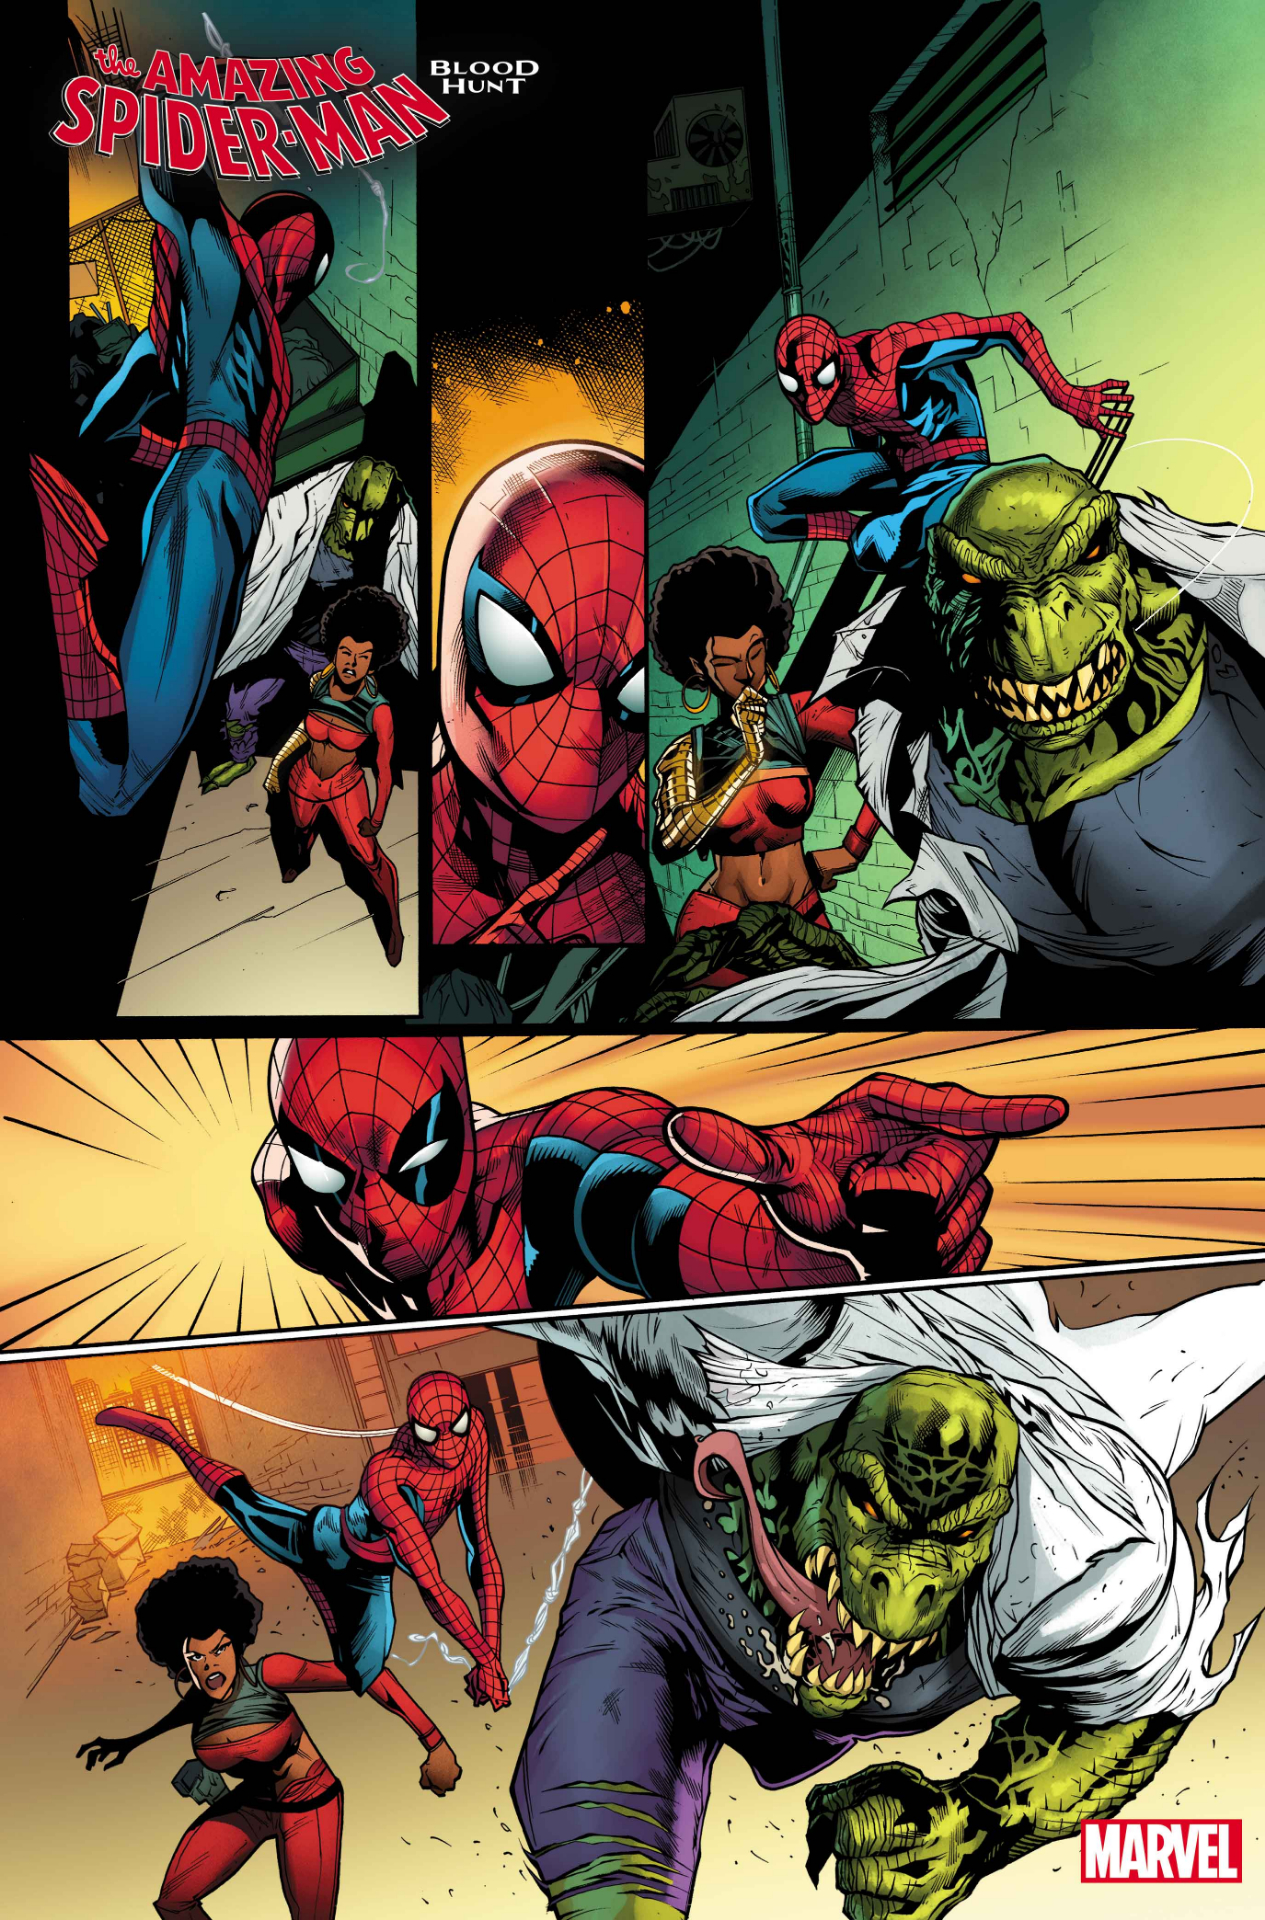 Erstaunlicher Spider-Man: Blutjagd #1